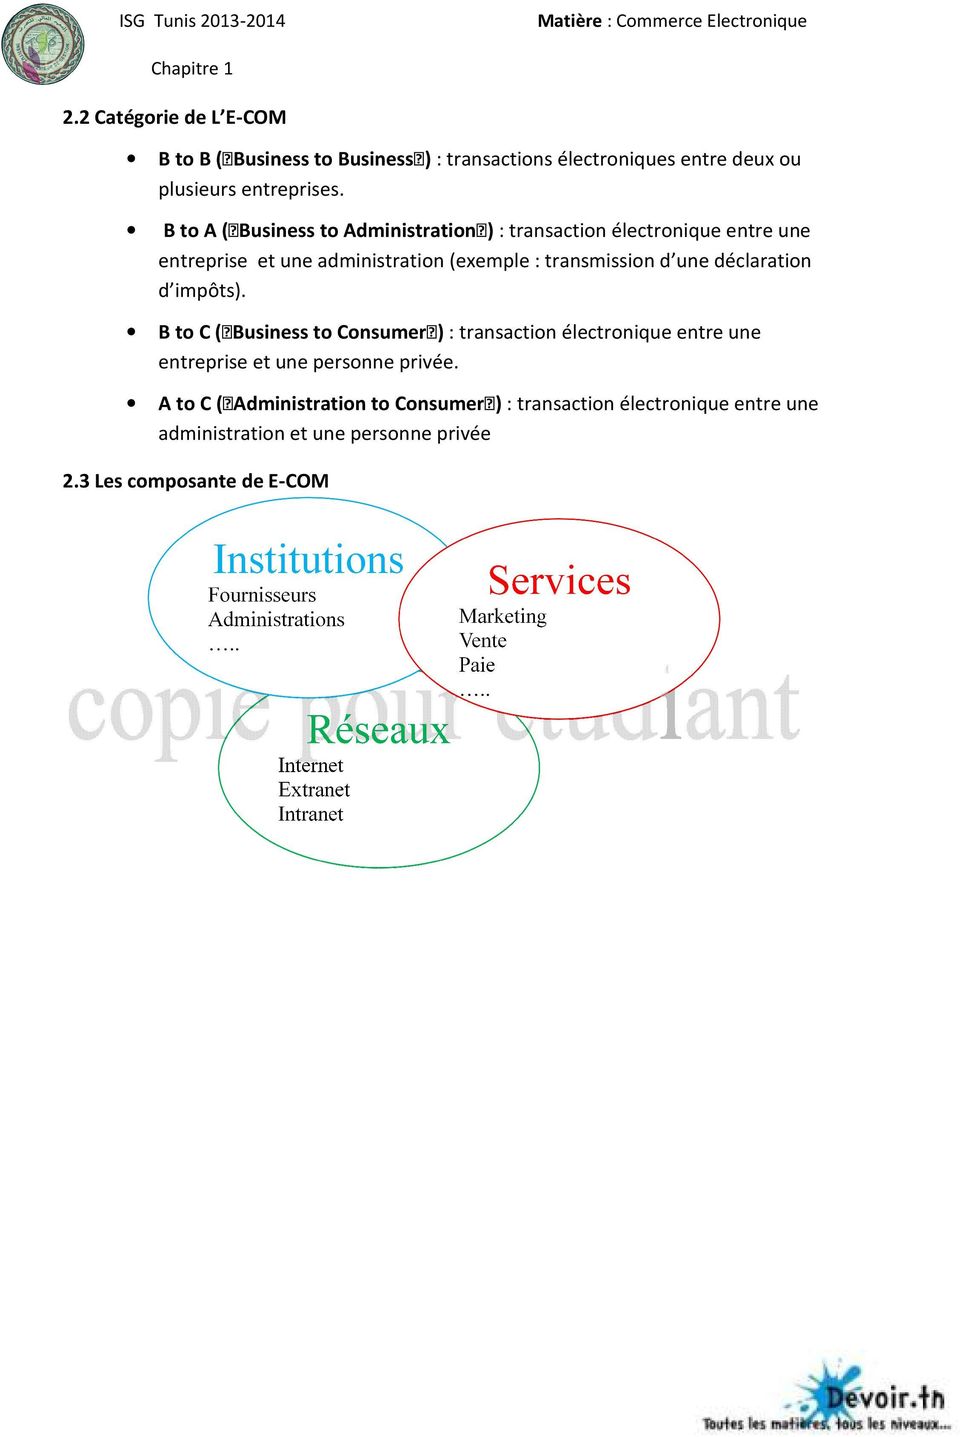 B to A ( Business to Administration ) : transaction électronique entre une entreprise et une administration (exemple : transmission d une